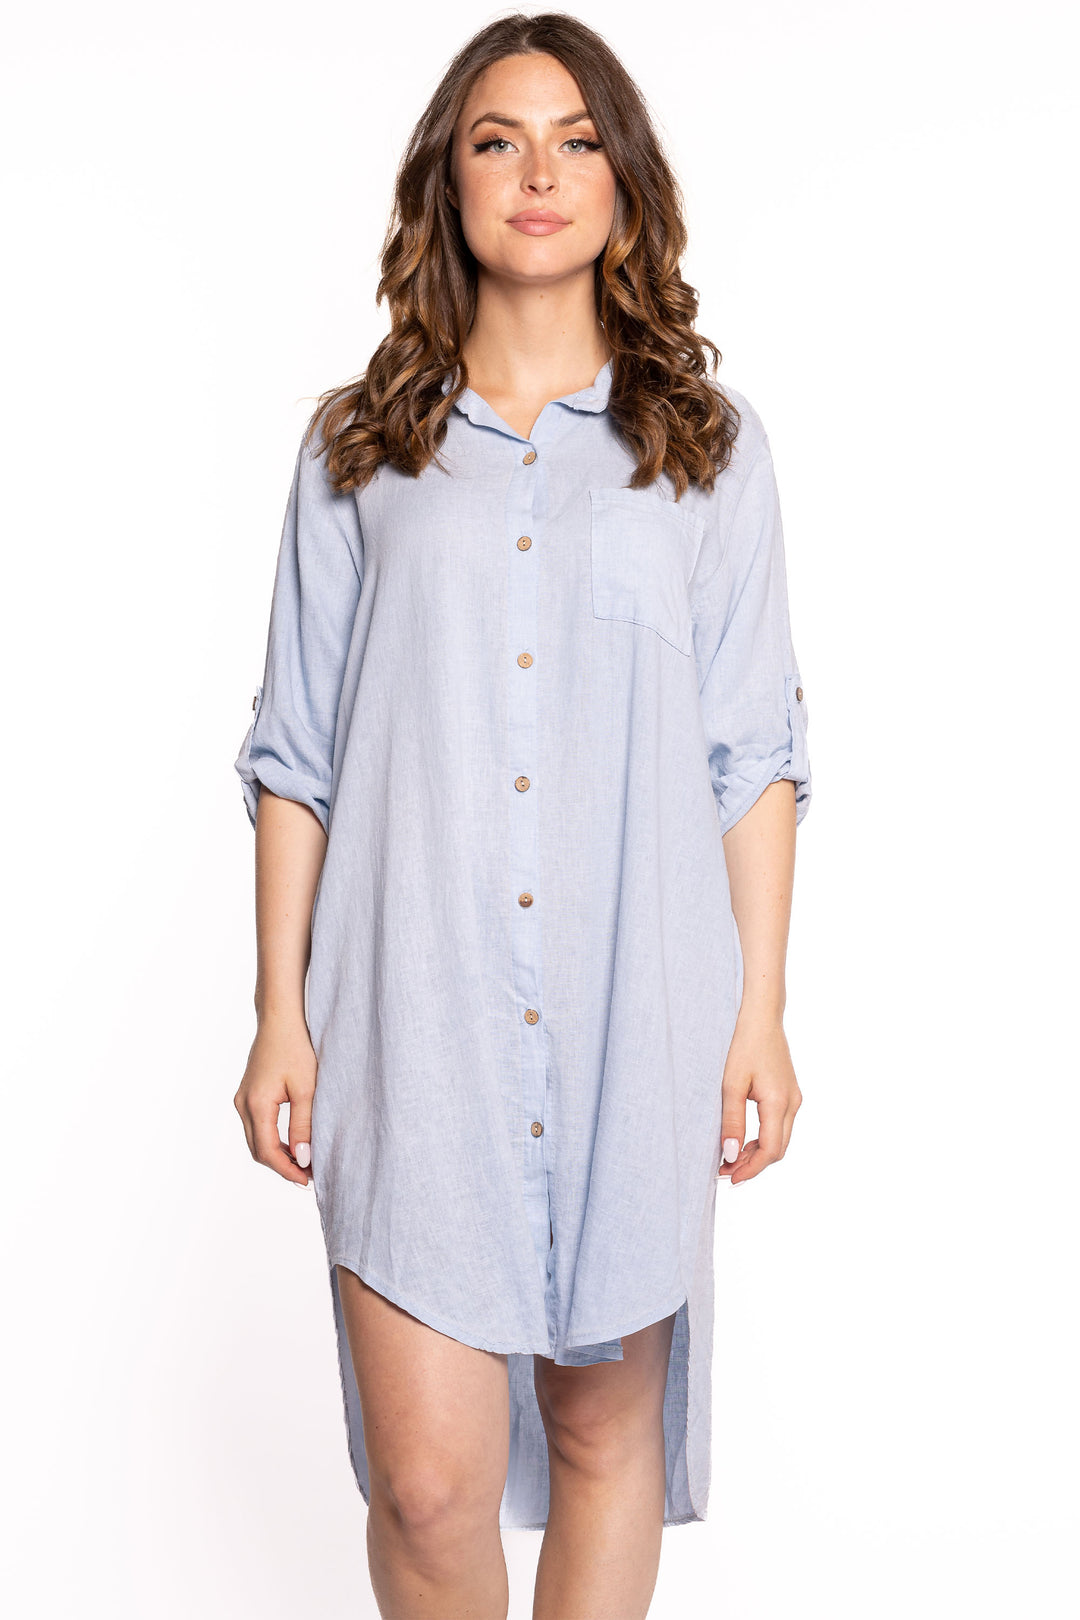 Etern Spring 2023 women's casual linen shirt dress with high-low hem - sky